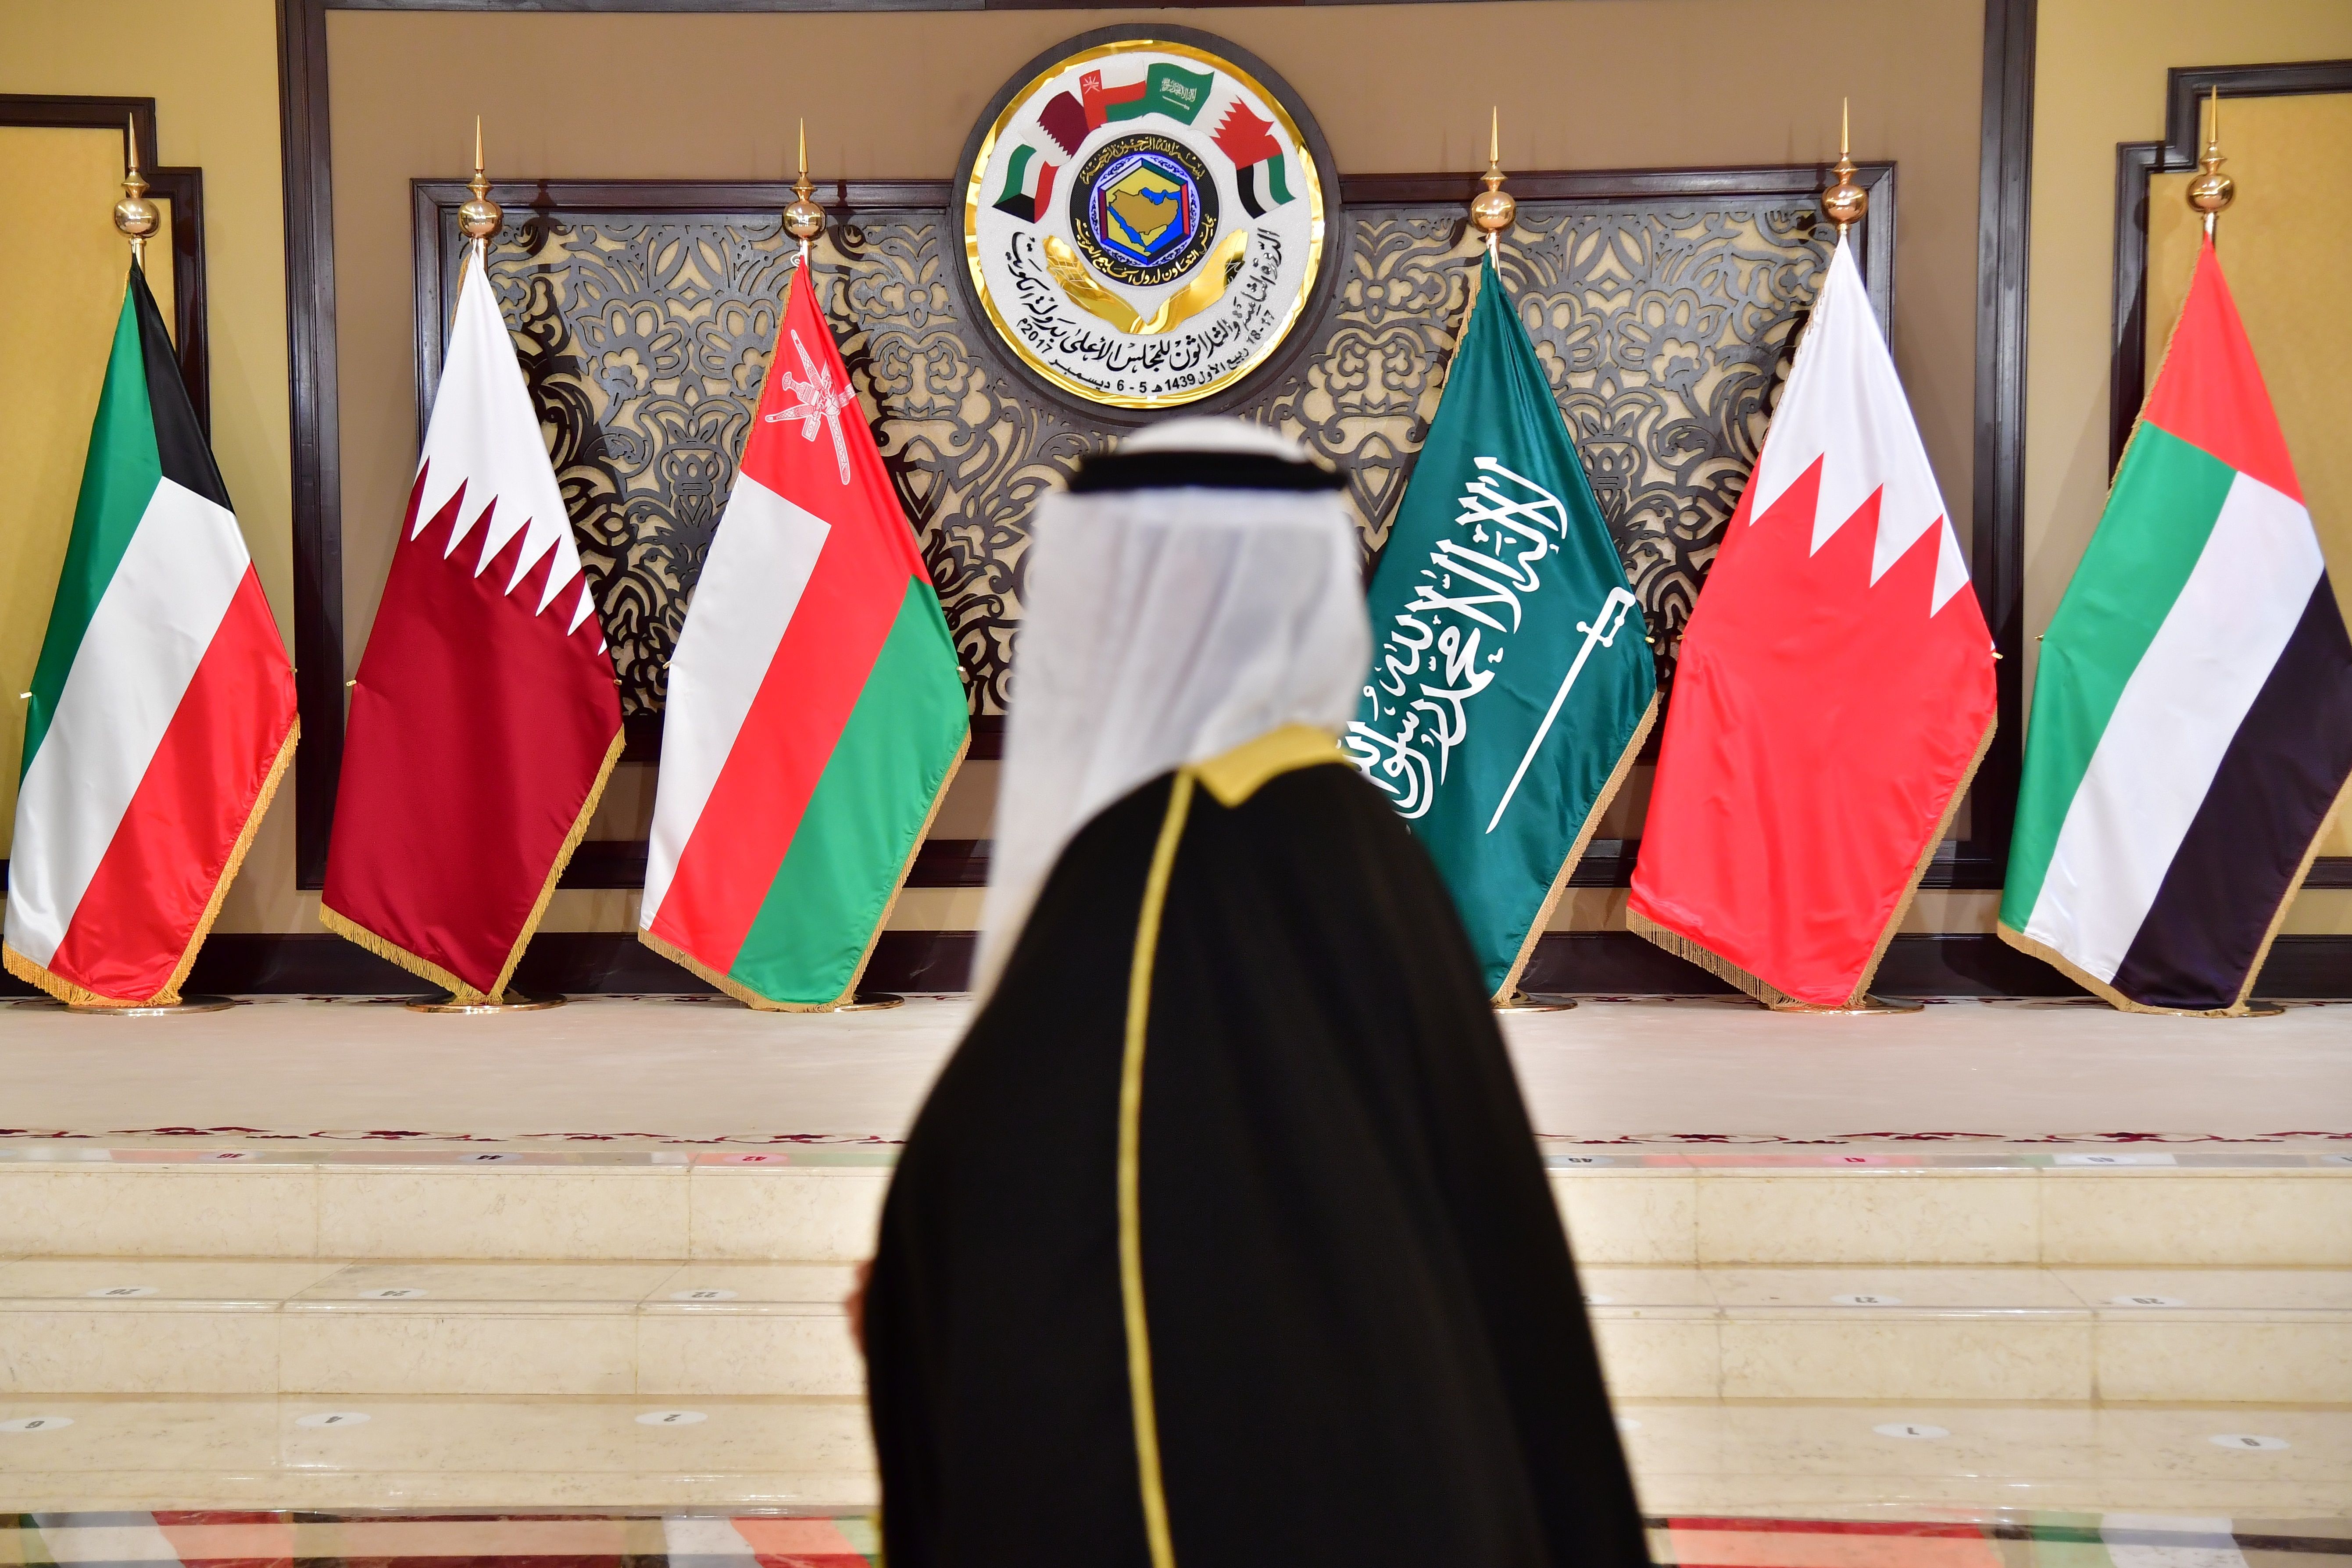 Катар и саудовская аравия. Совет сотрудничества арабских государств Персидского залива. Флаг совета сотрудничества арабских государств Персидского залива,. Союз арабских государств Персидского залива. Совет по сотрудничеству арабских государств Персидского залива.